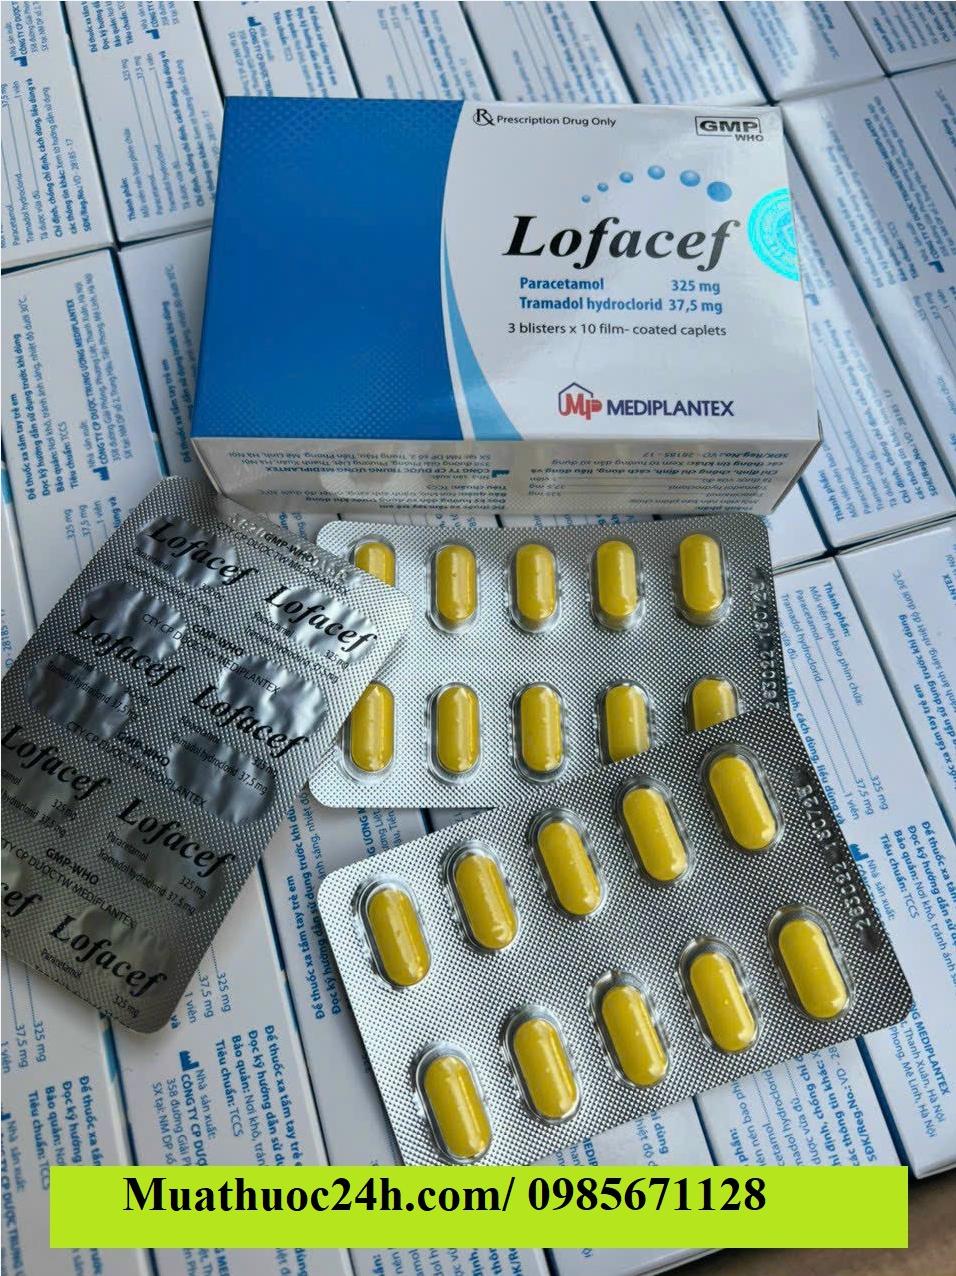 Thuốc Lofacef Tramadol/Paracetamol 37.5mg/325mg giá bao nhiêu mua ở đâu